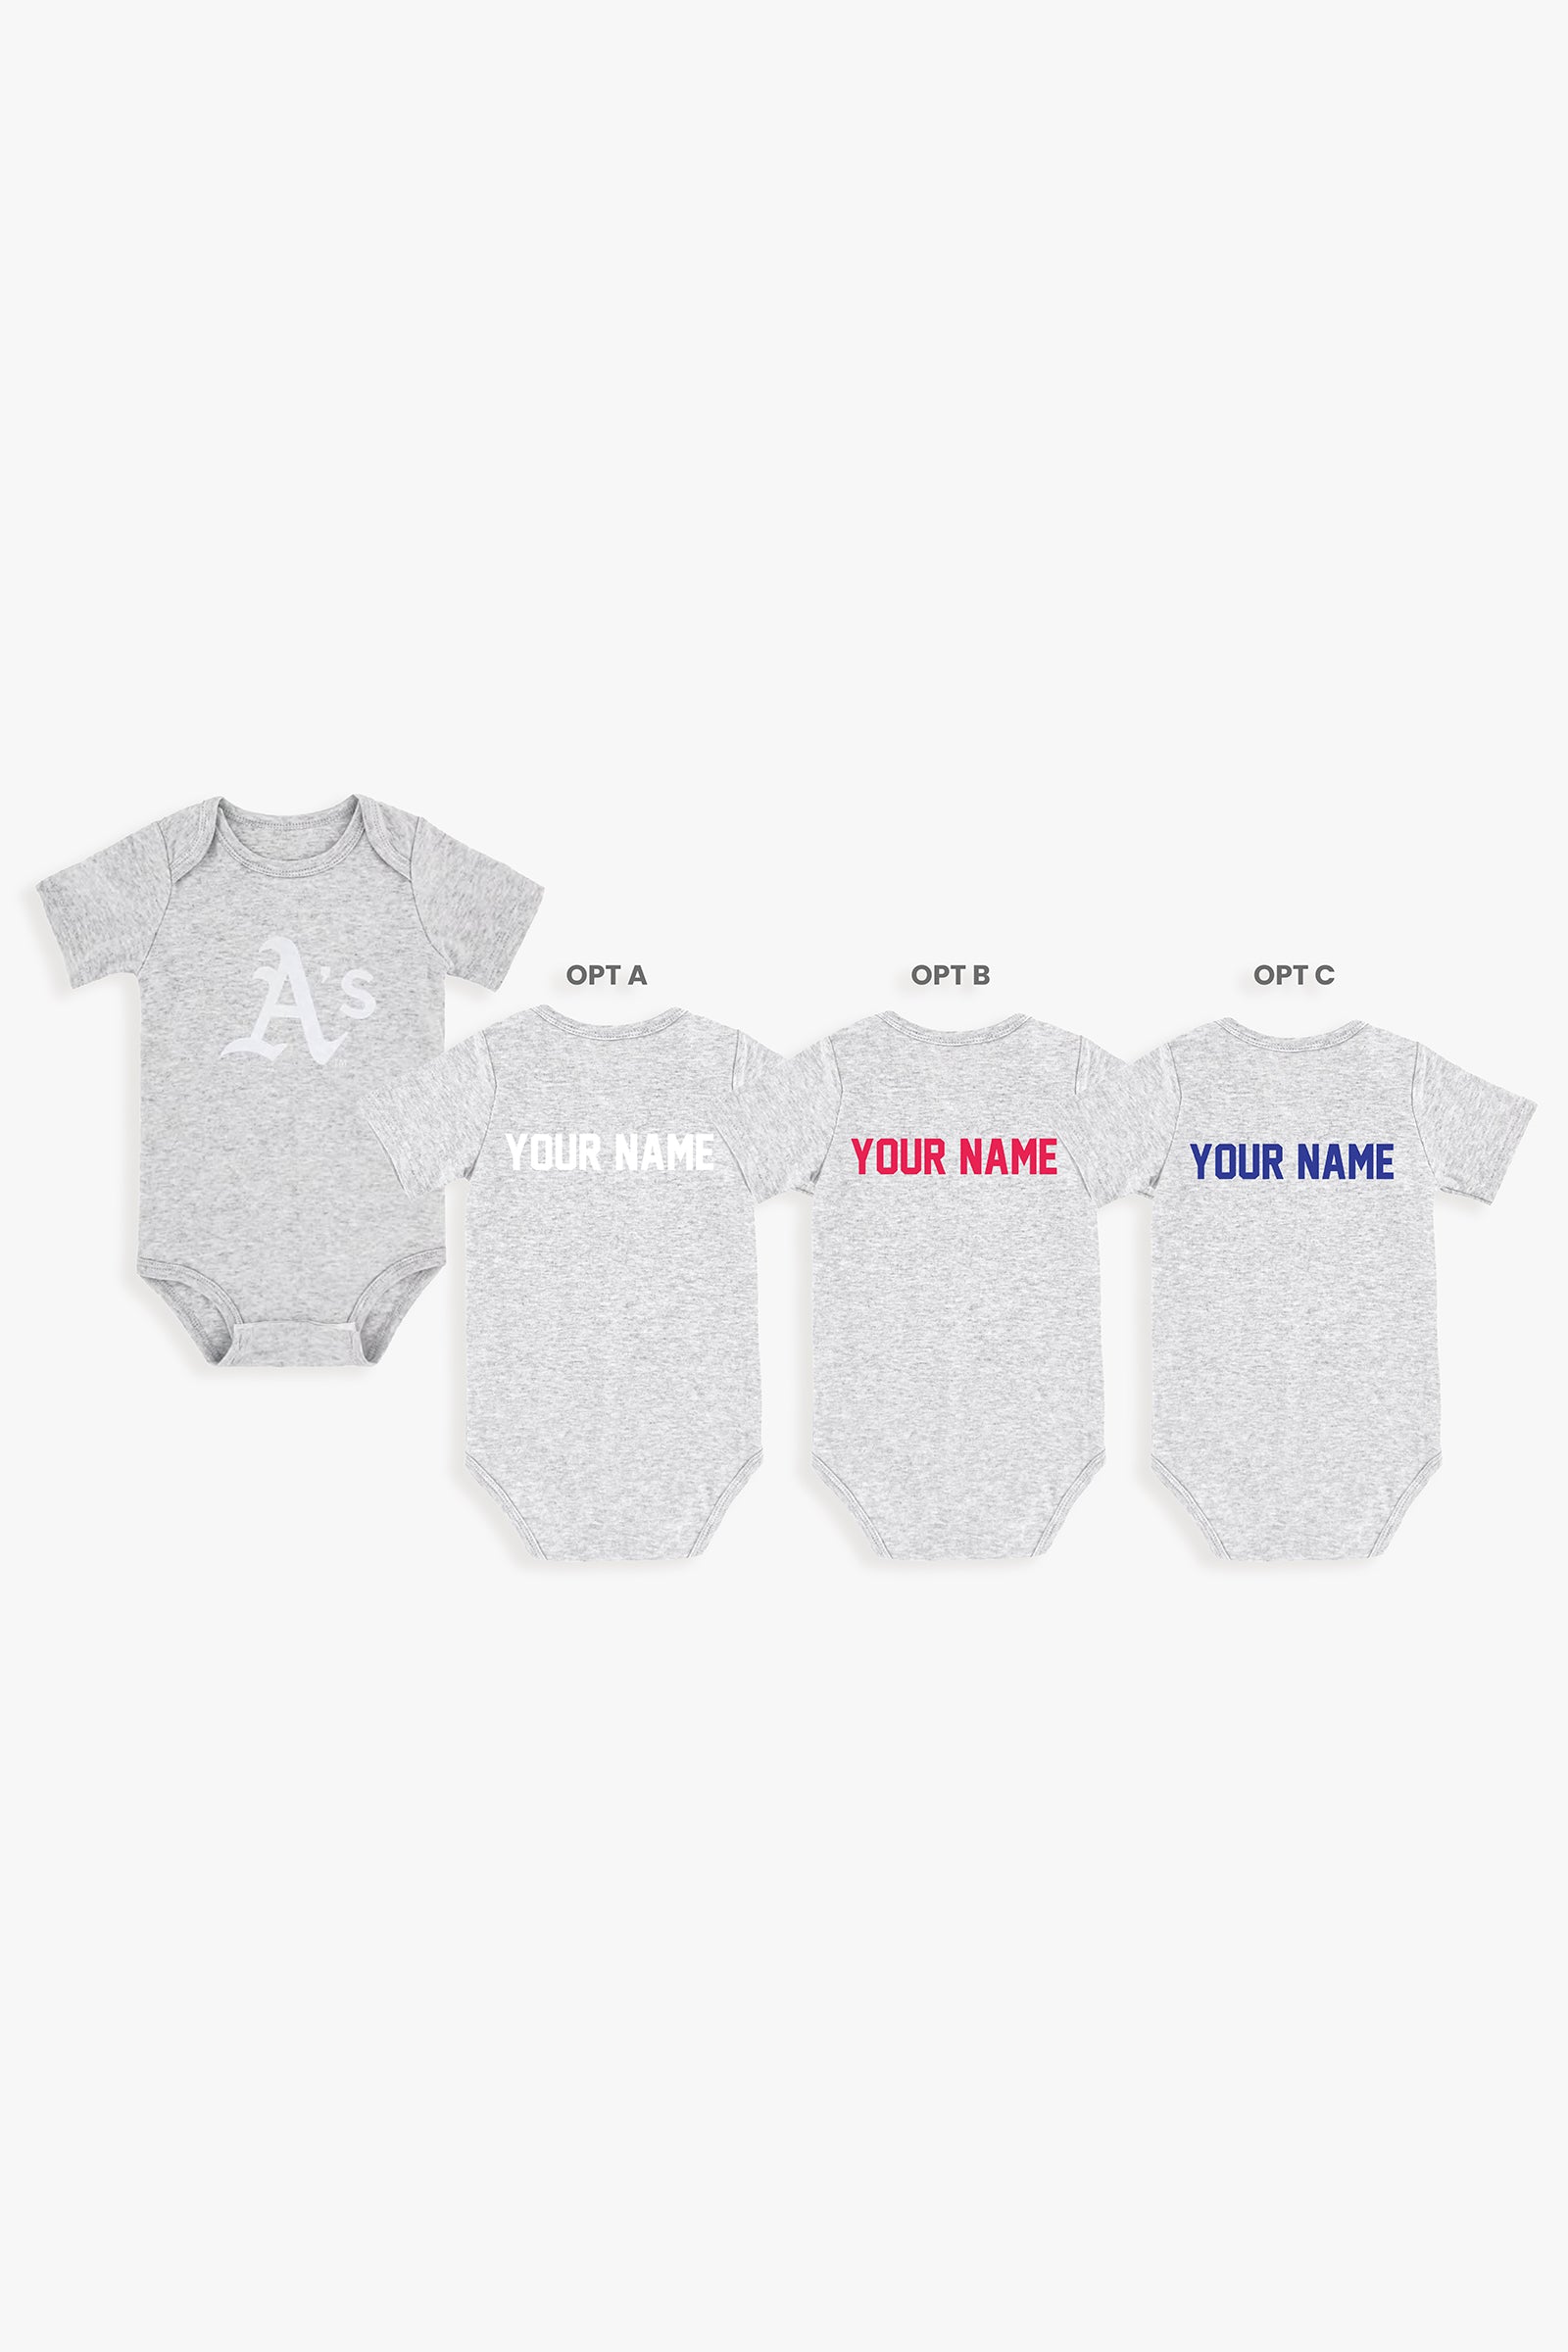 Customizable MLB Baby Onesie Bodysuit in Grey (0-3 Months)